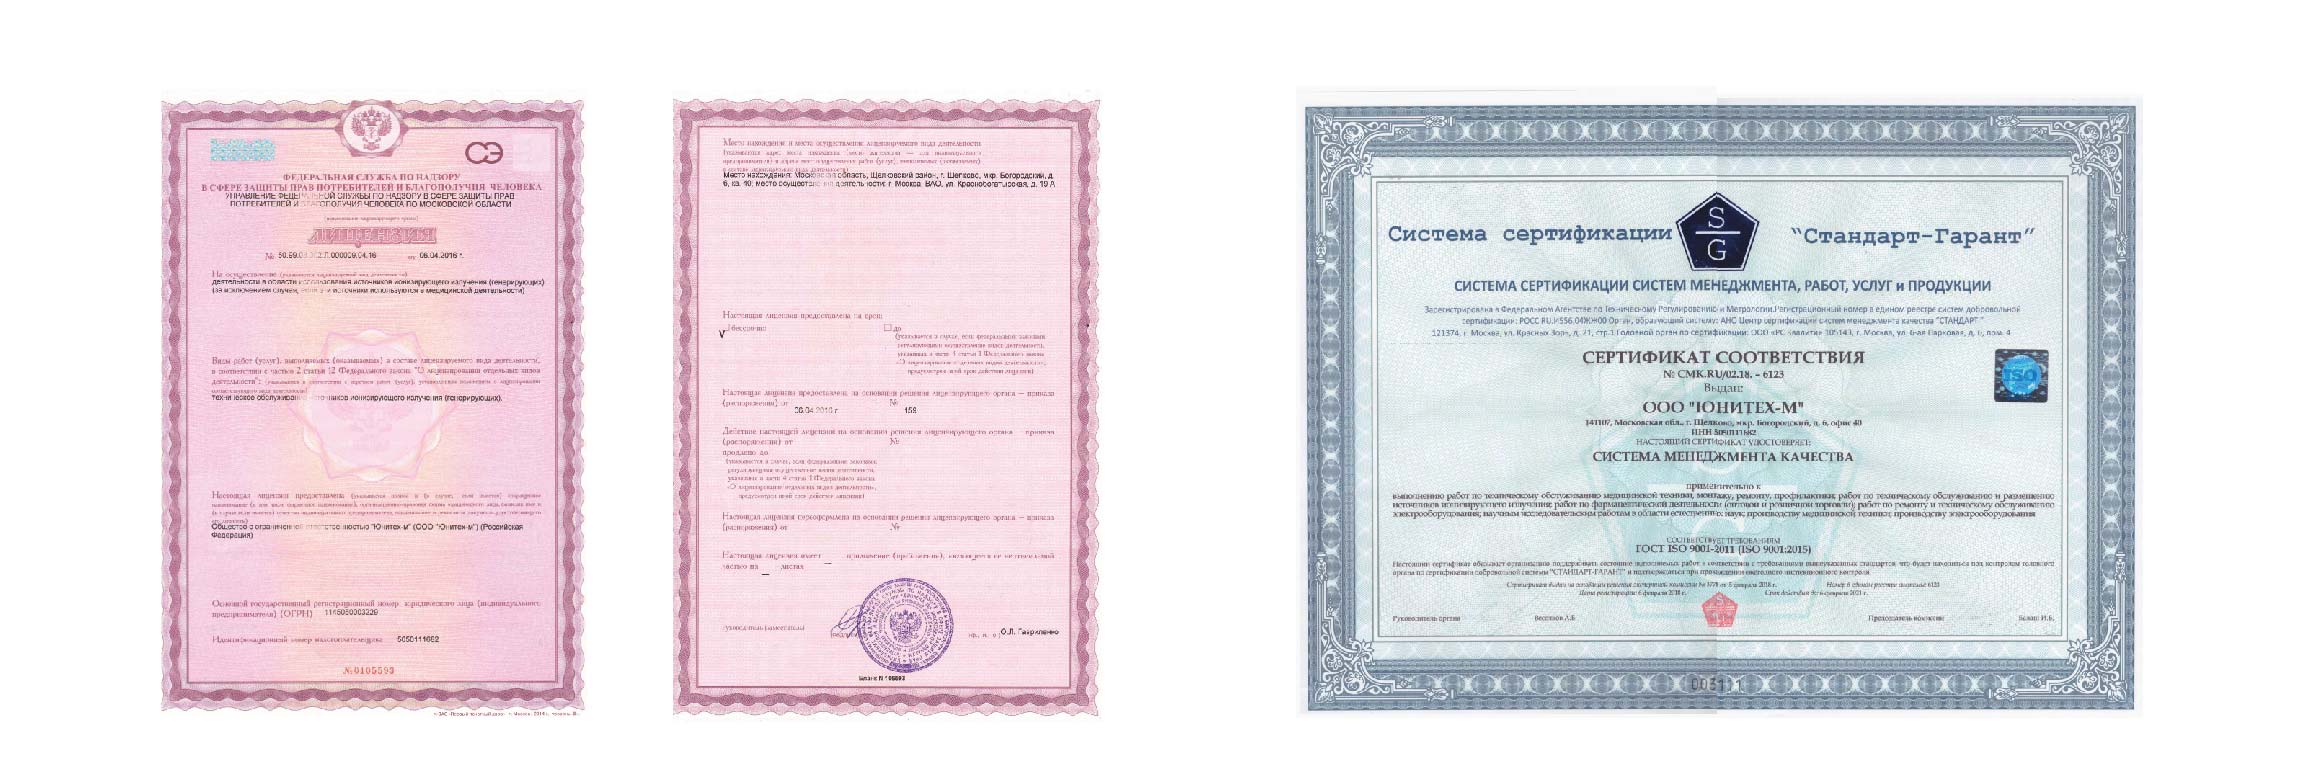 Лицензии и сертификаты ООО Юнитех-М